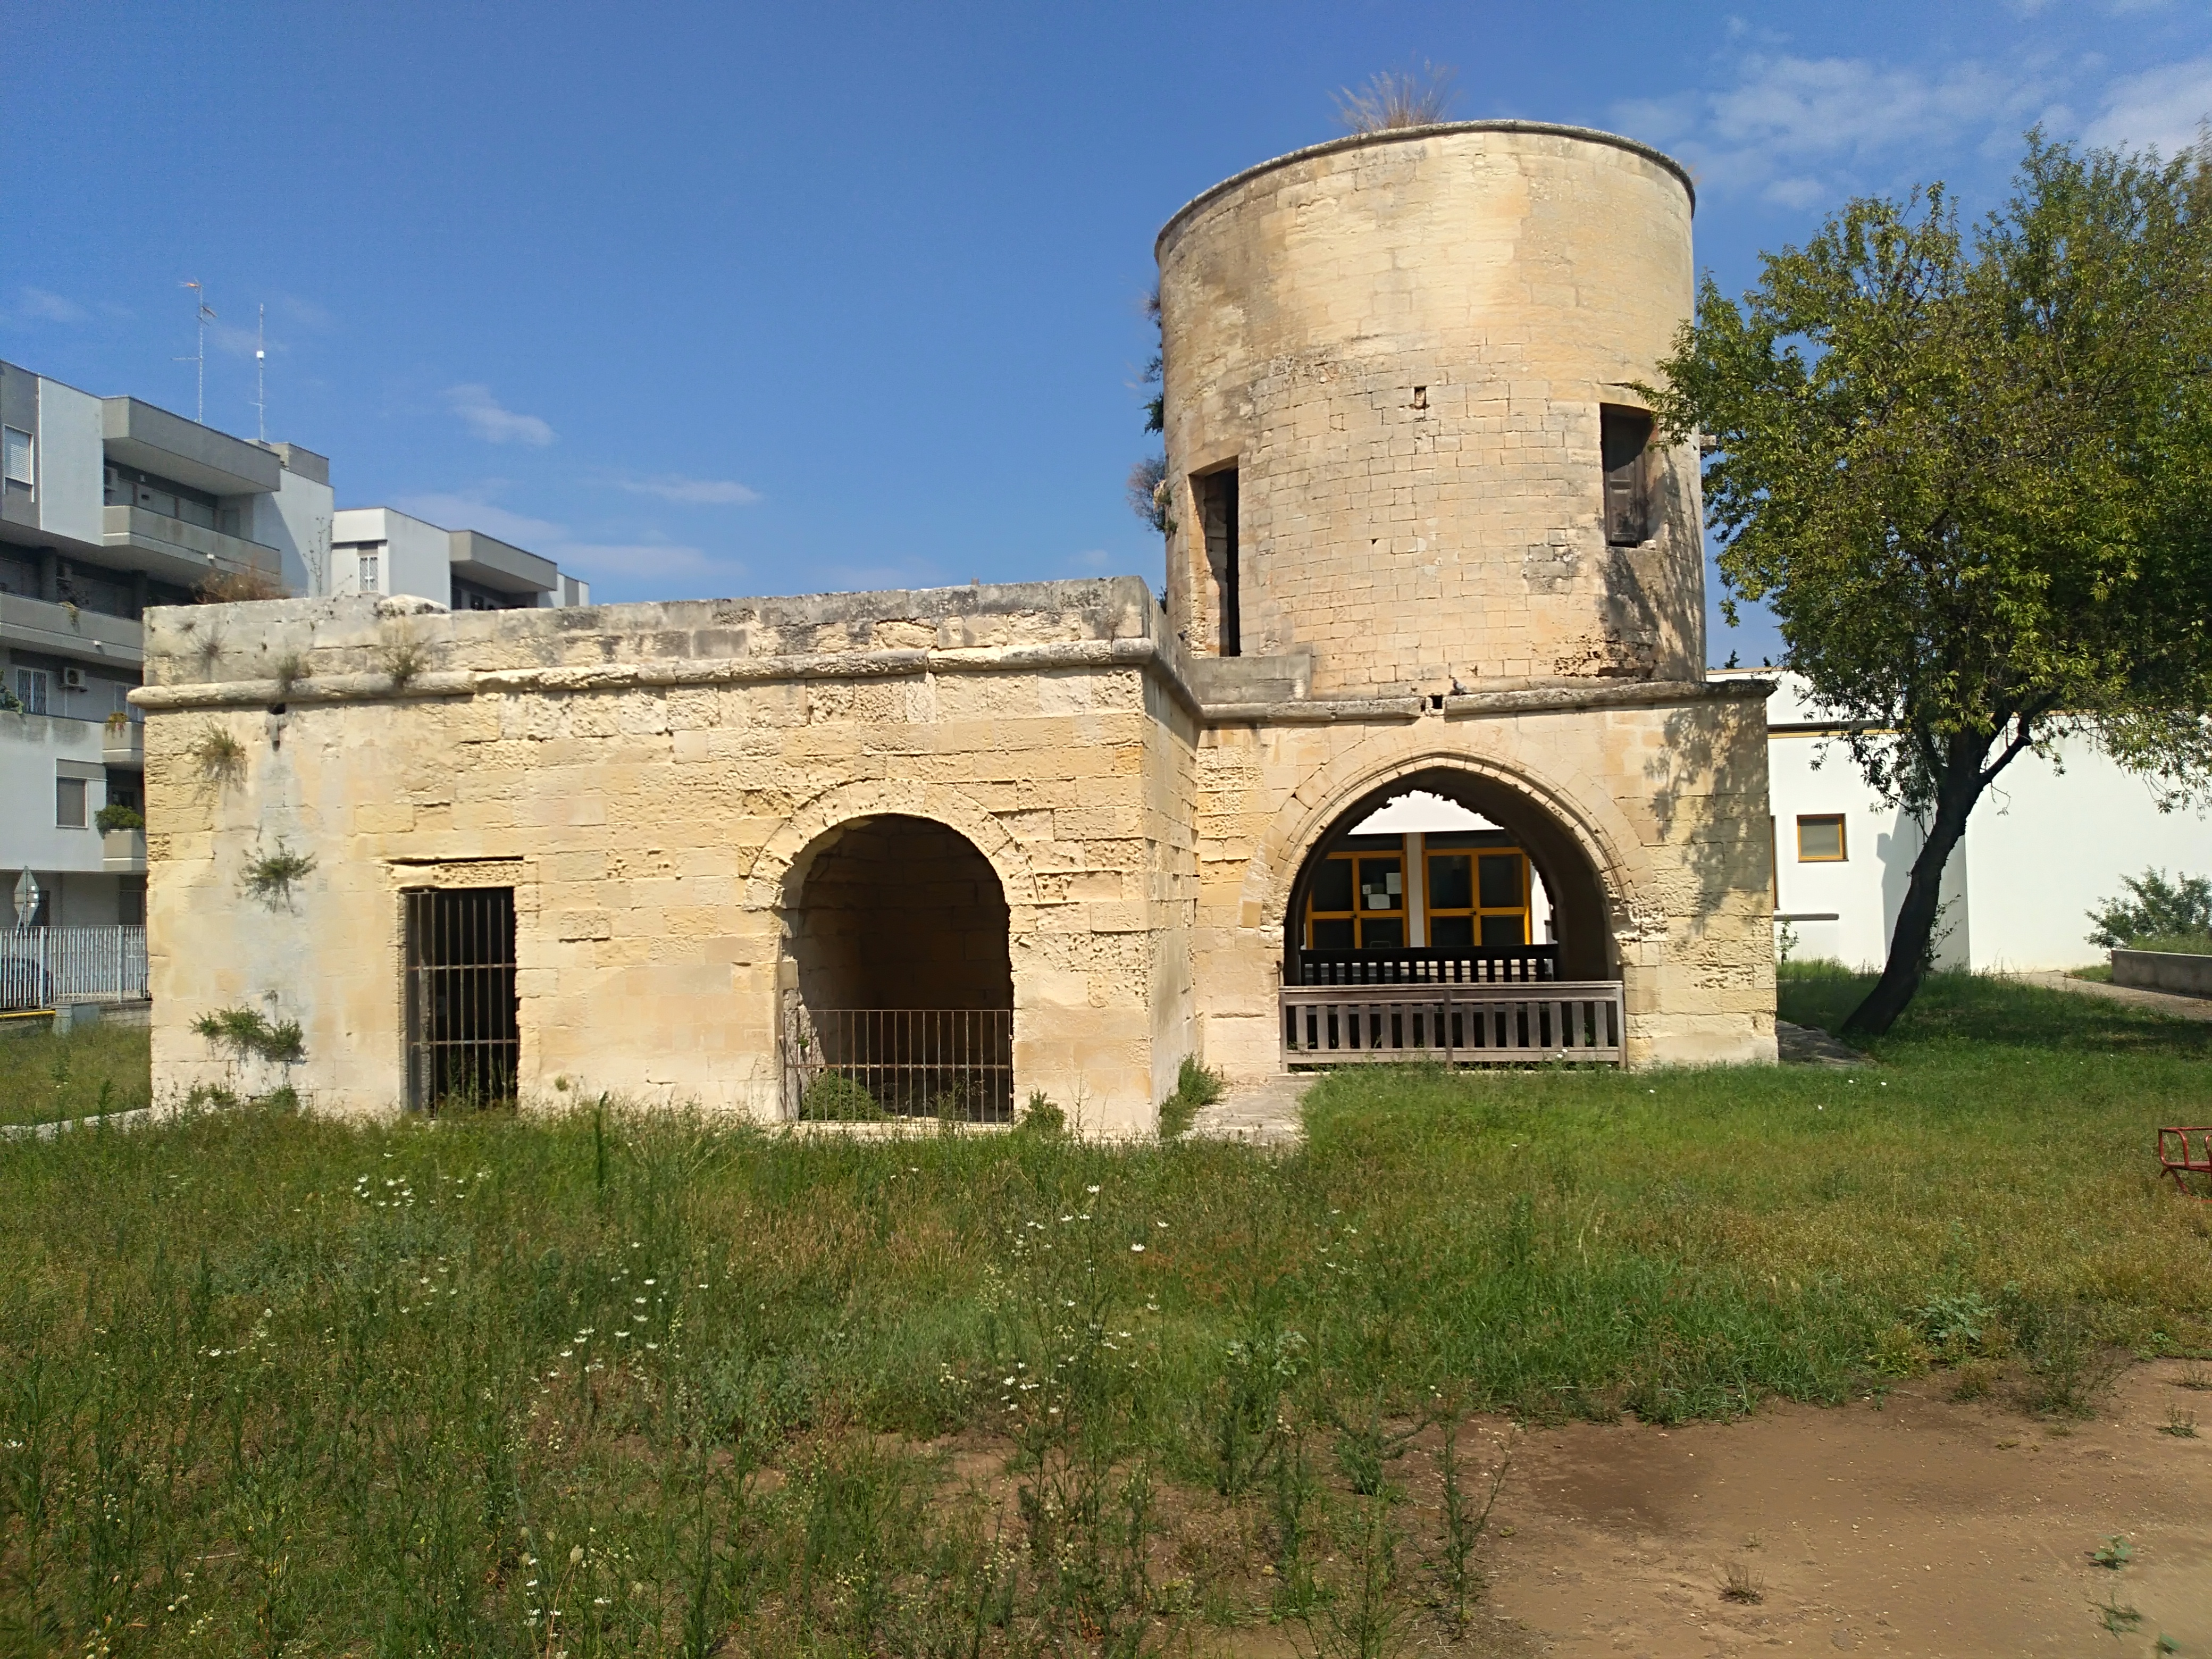 Torre cilindrica via di Pettorano (torre) - Lecce (LE)  (XVI)